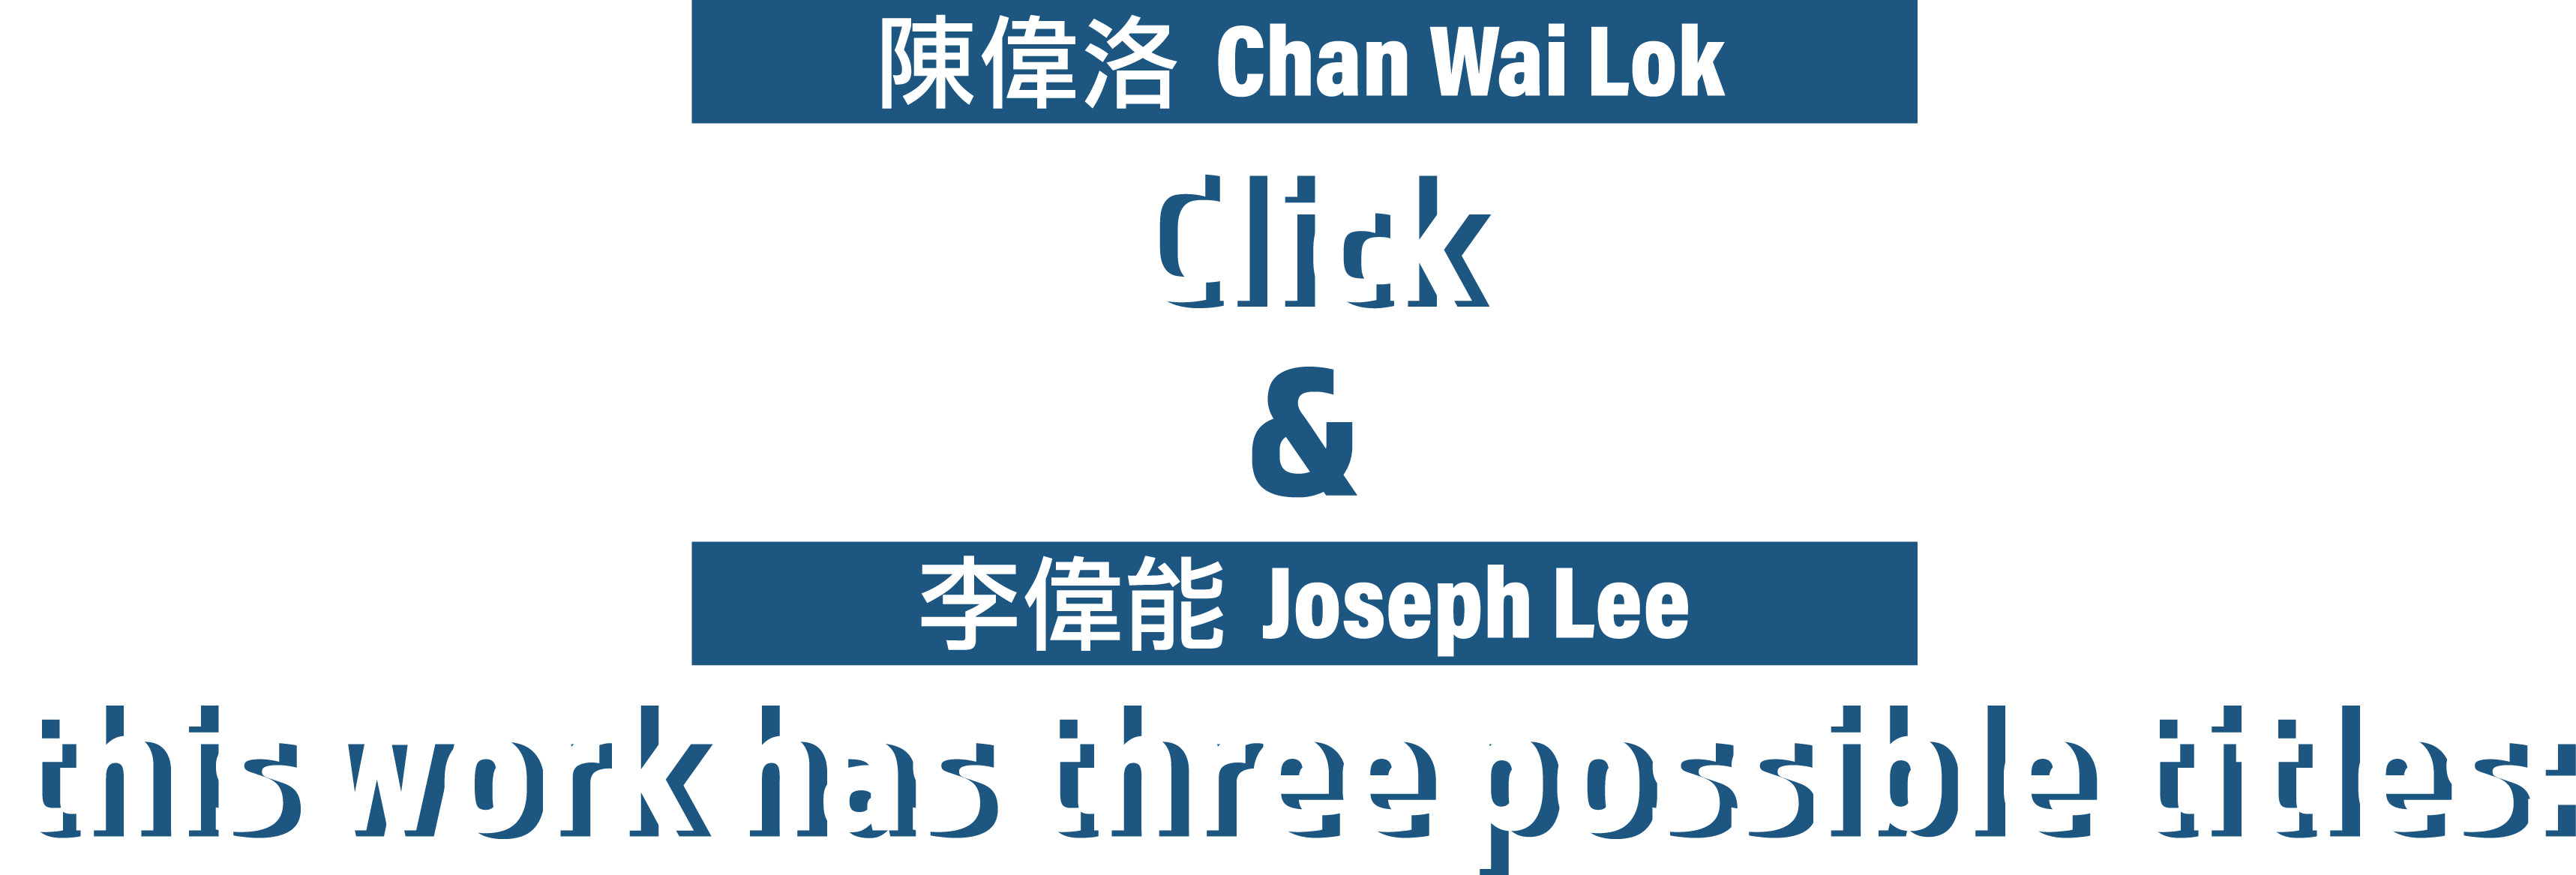 陳偉洛、 李偉能《Click》&《this work has three possible titles:》